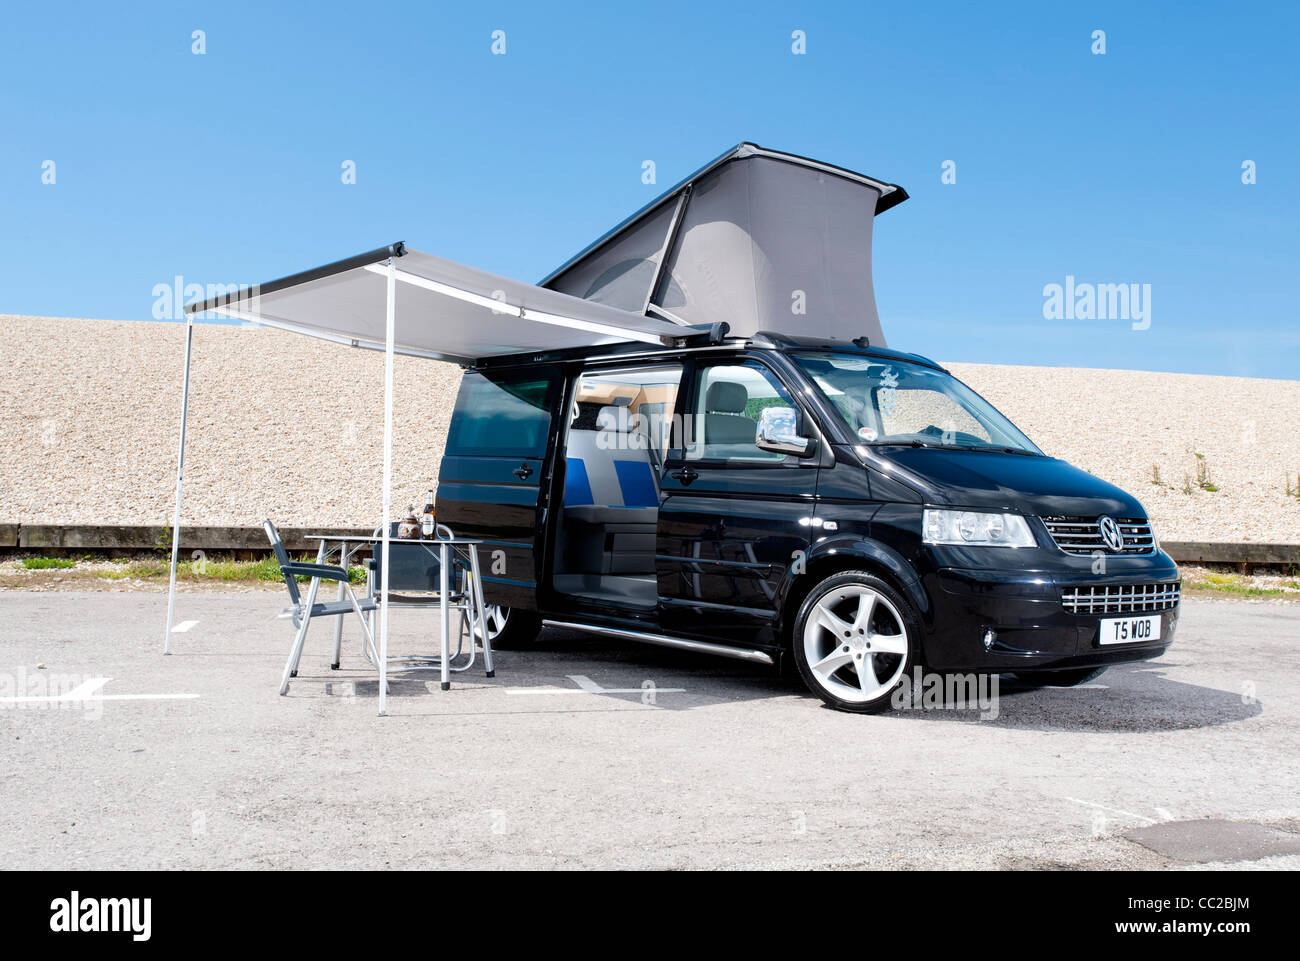 Volkswagen VW T5 California camper van Stock Photo - Alamy